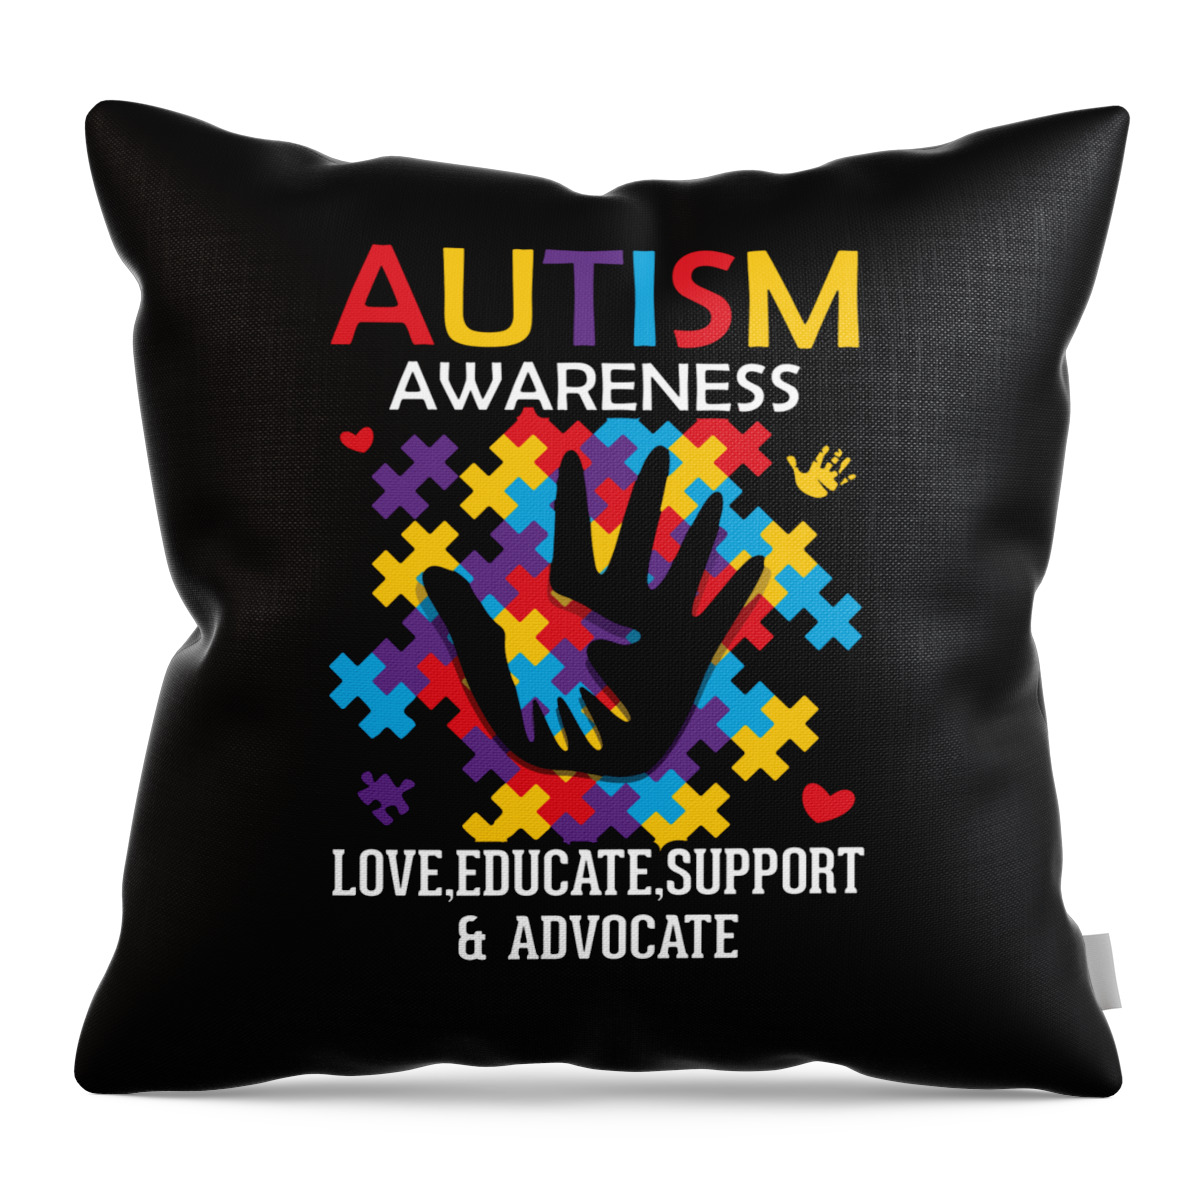 Autism Awareness Throw Pillow featuring the digital art Autism Awareness Design by Me